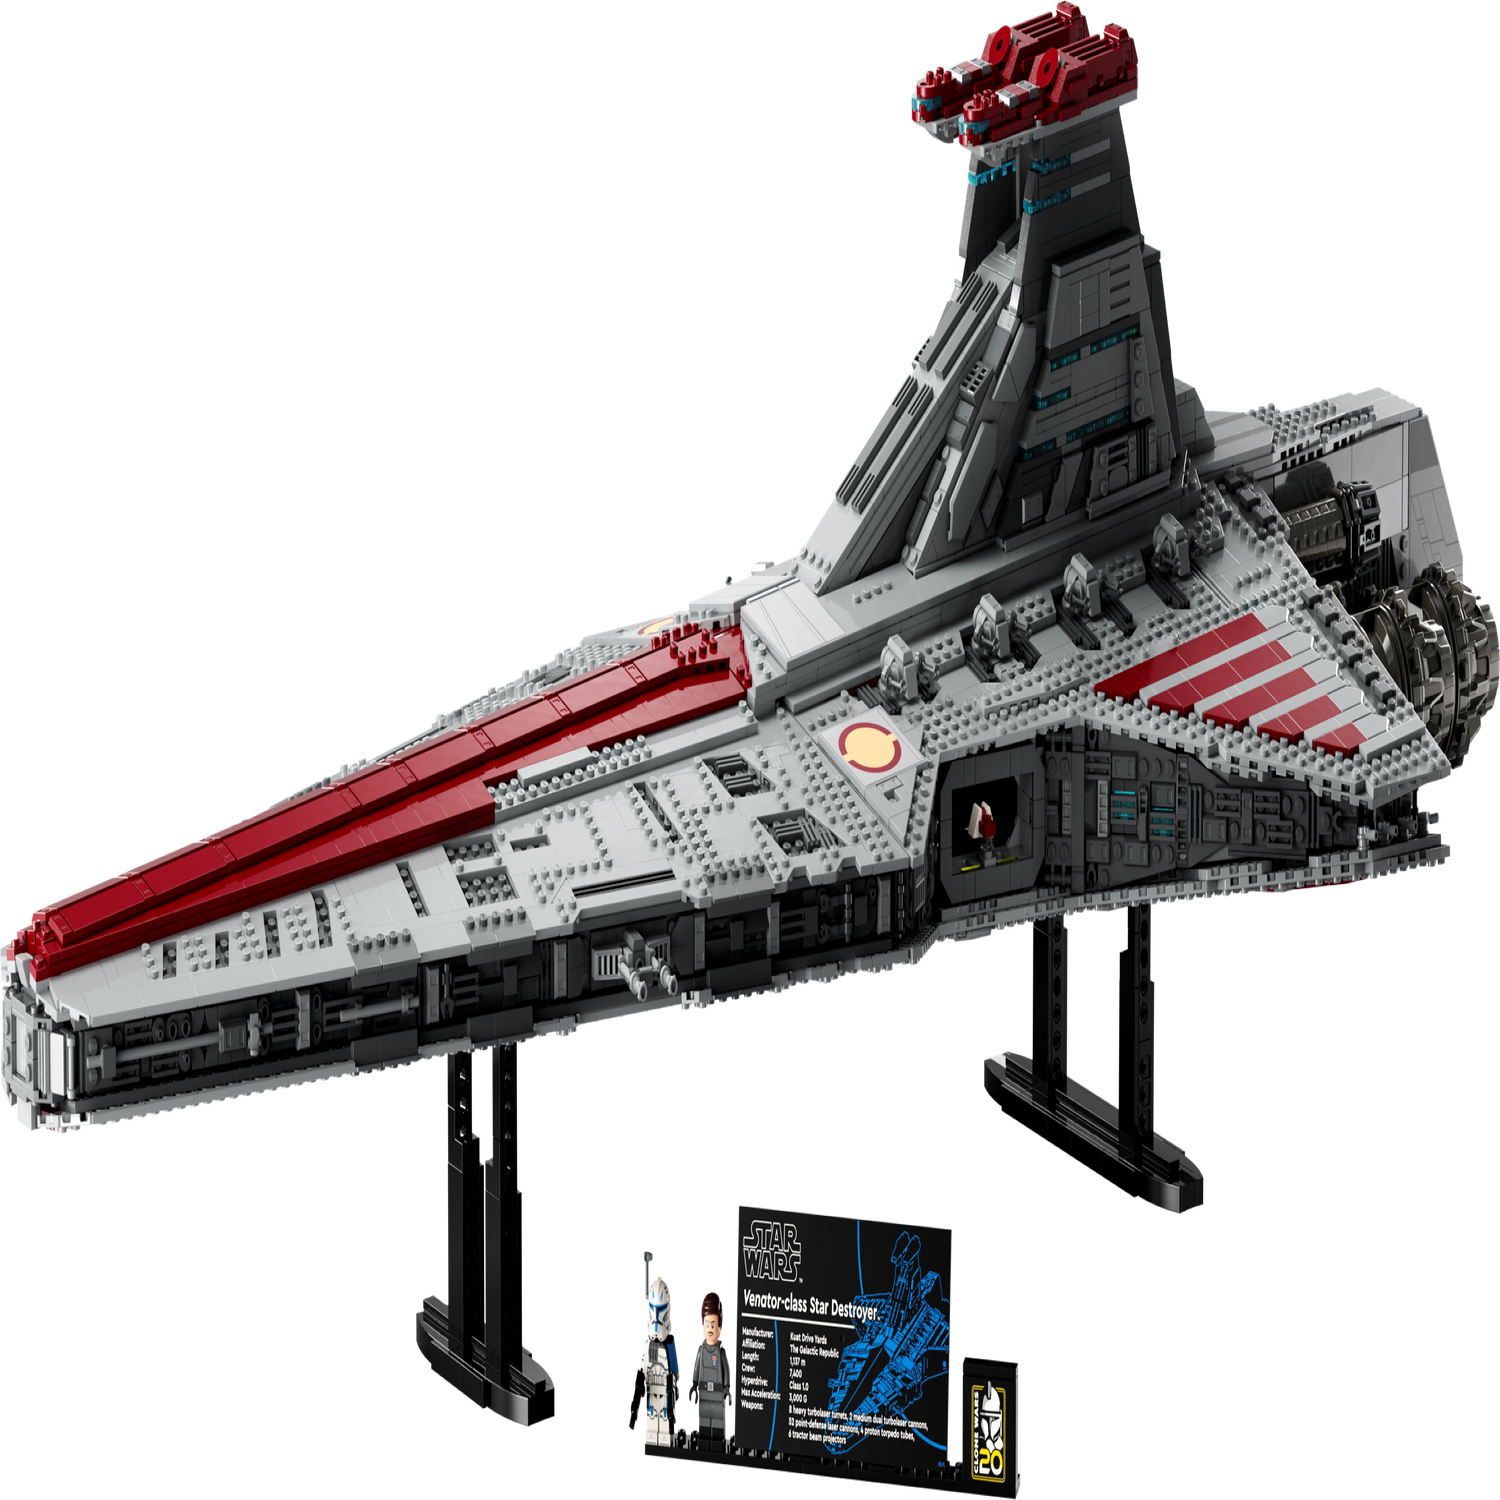 LEGO 8039 Star Wars The Clone Wars Venator-Class Republic Attack